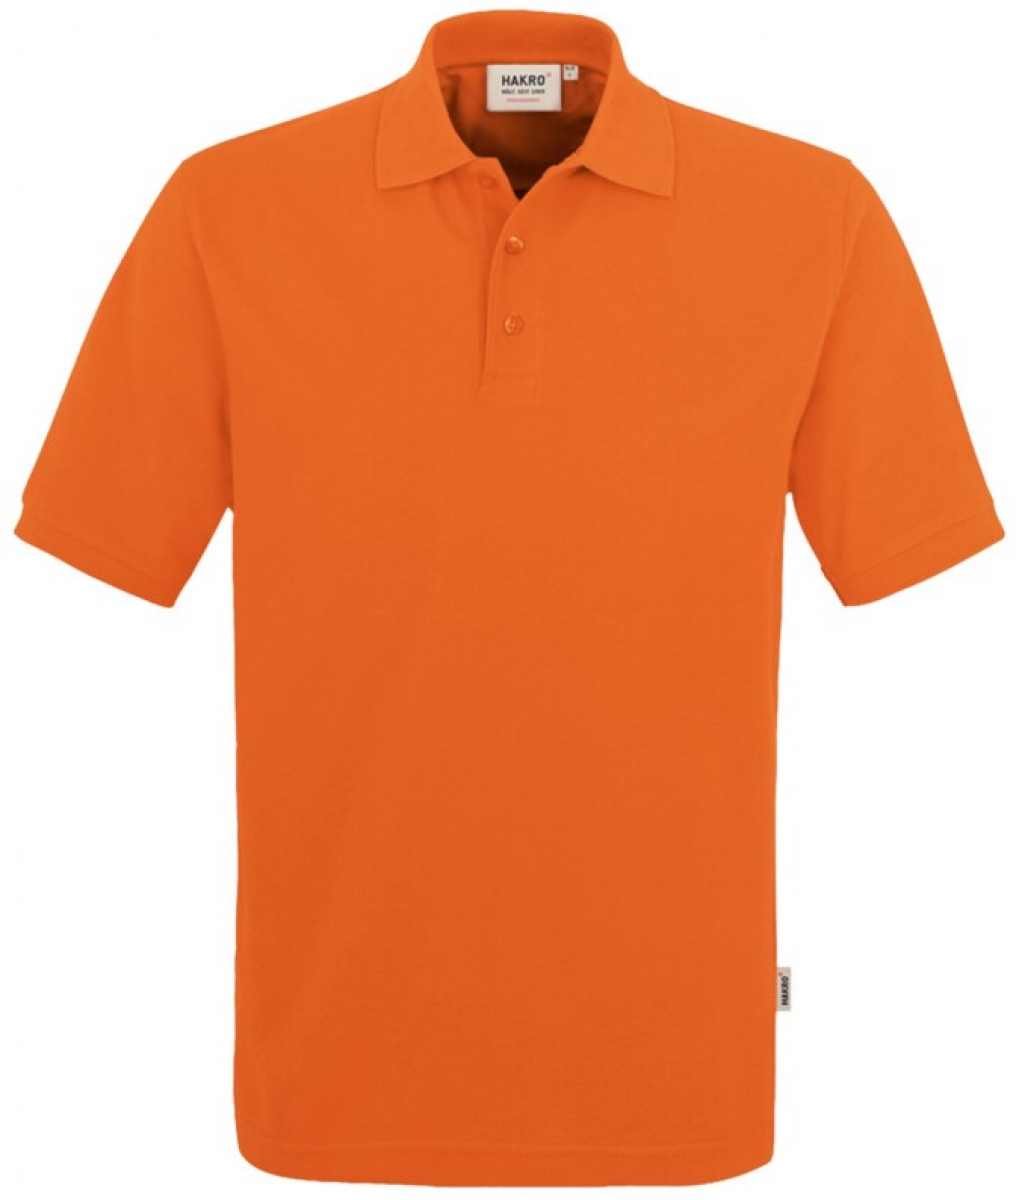 HAKRO-Worker-Shirts, Poloshirt Performance, orange